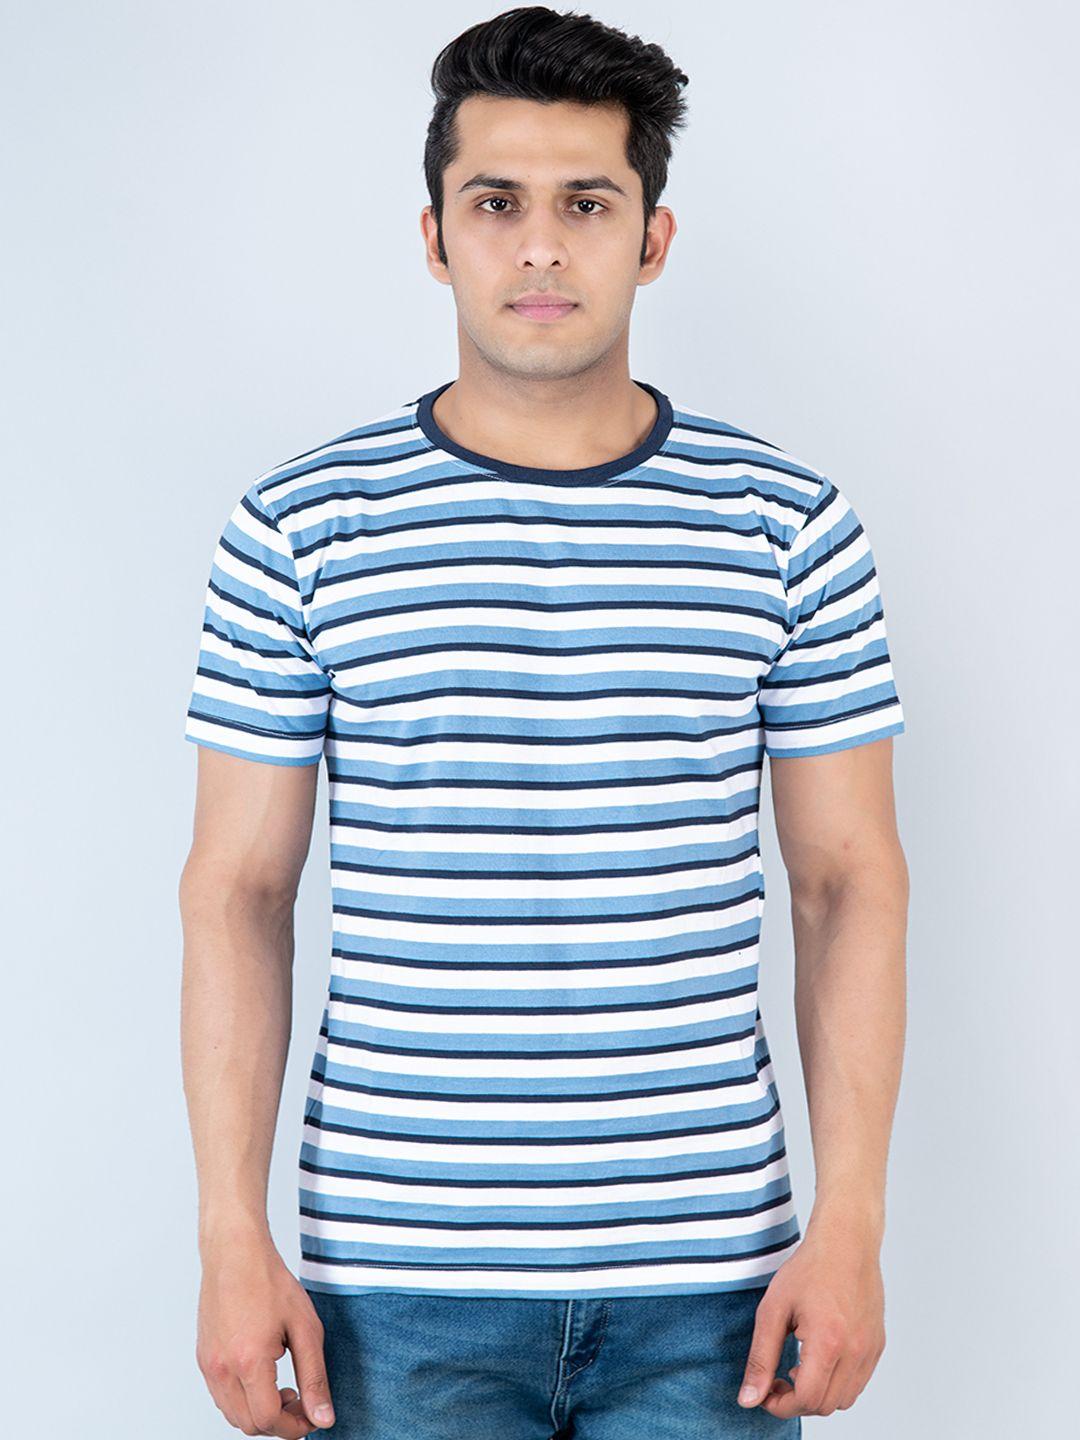 tistabene men multicoloured striped t-shirt